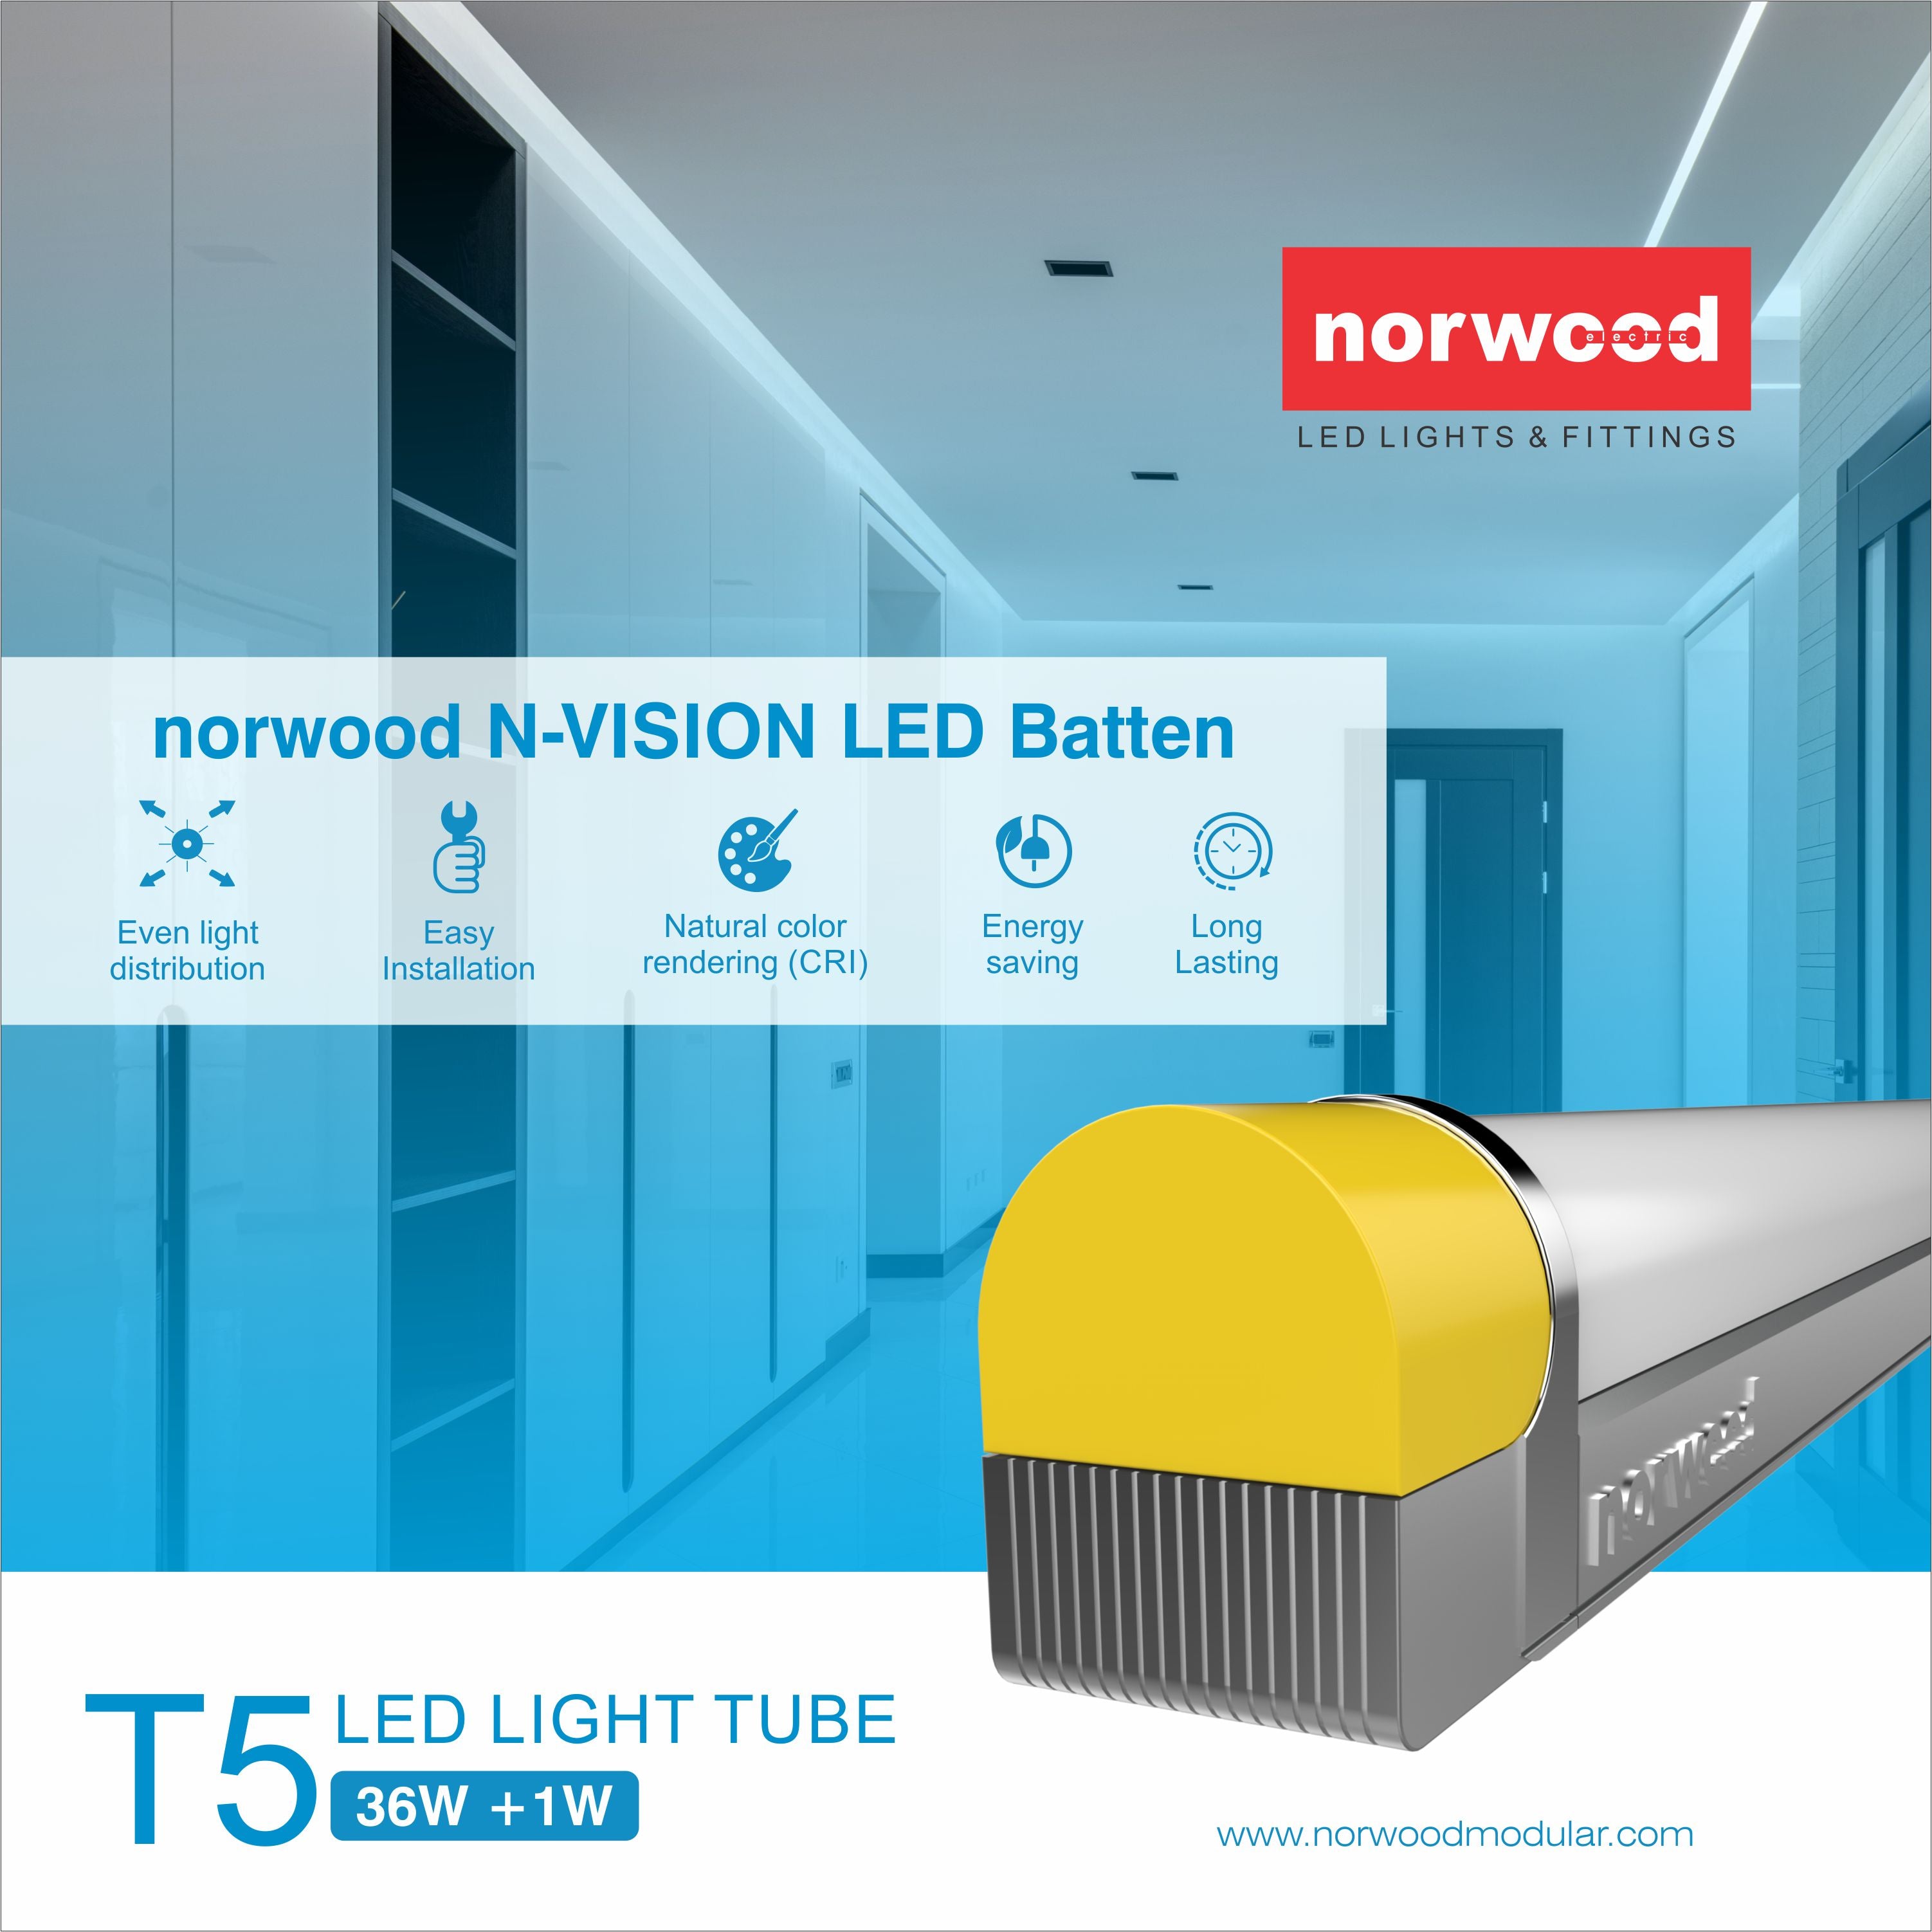 N-Vision LED Batten